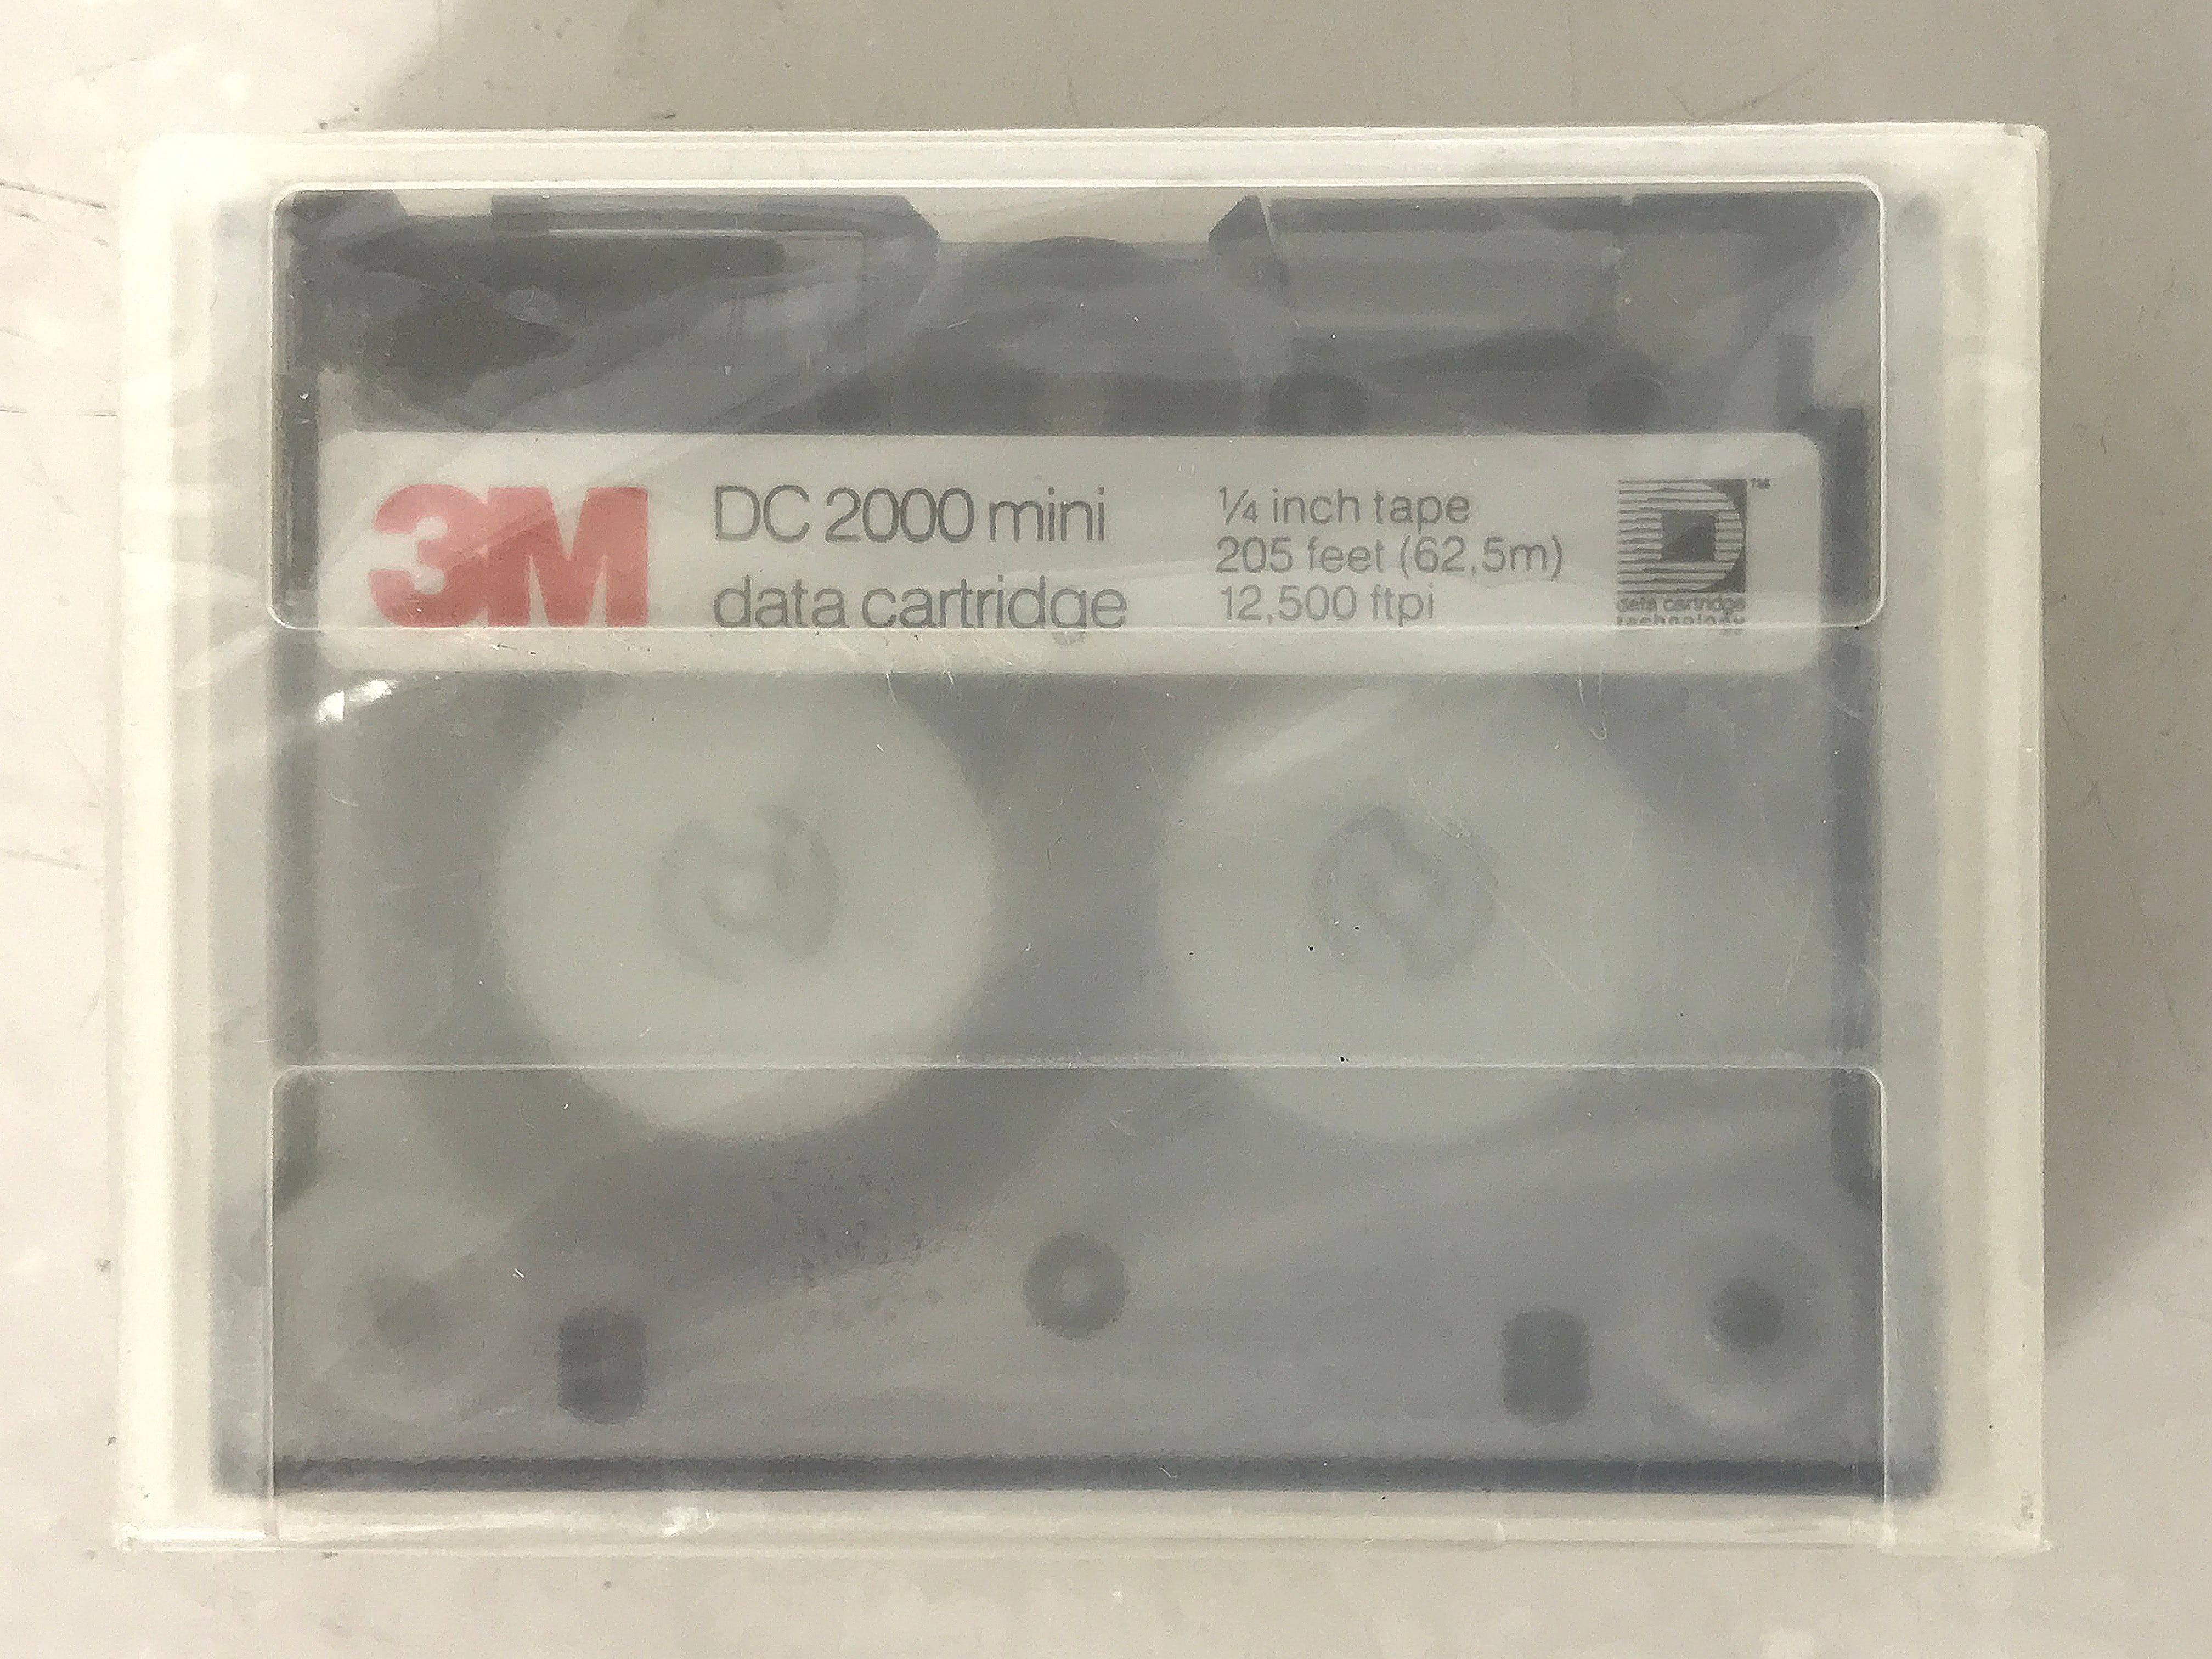 3M DC 2000 40MB 205' Mini Data Cartridge Tape